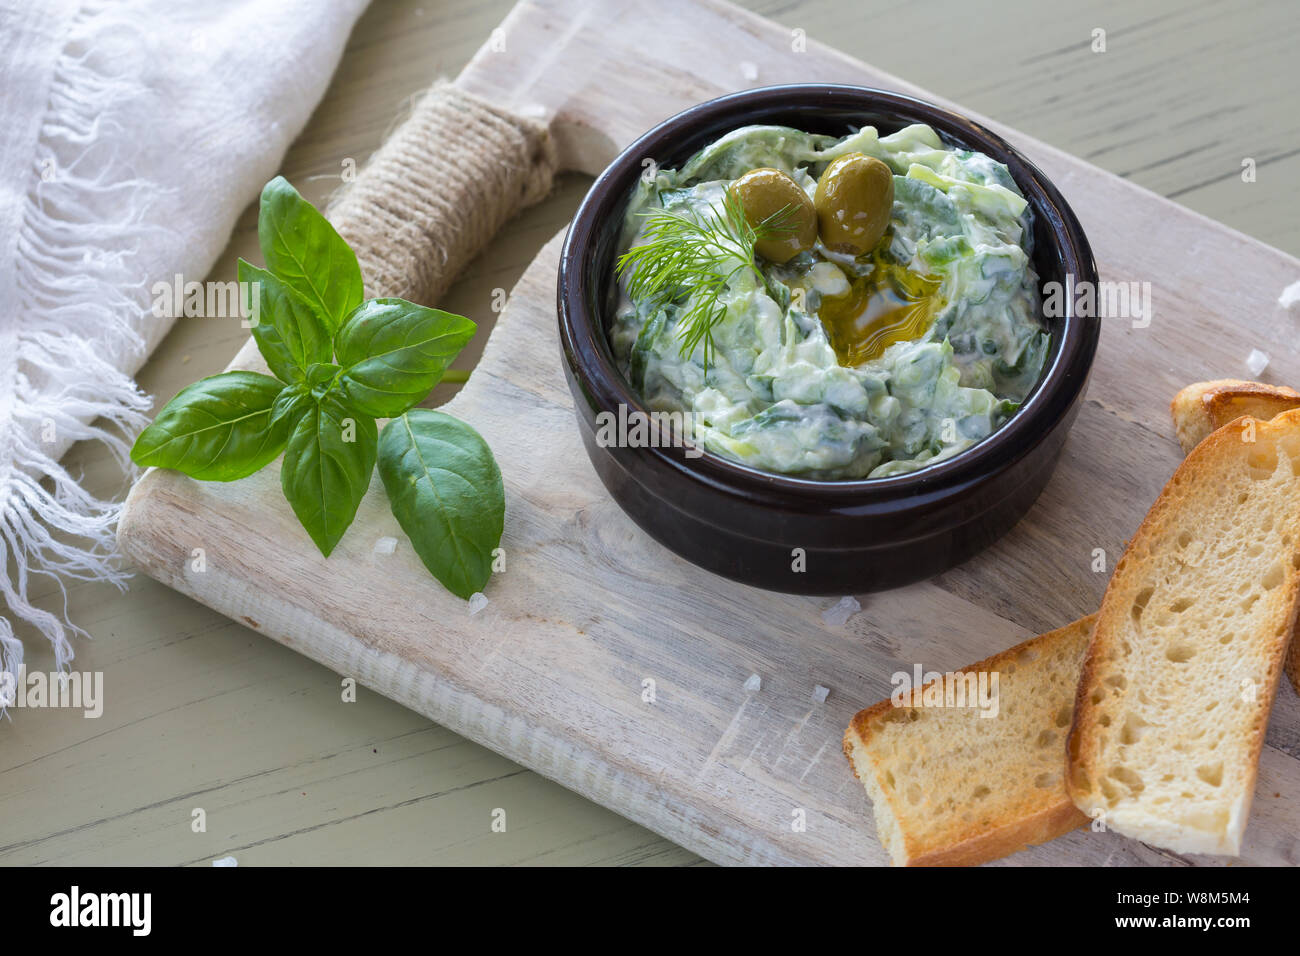 Trempette grecque tzatziki sauce ou vinaigrette ingrédients et décoré avec de l'huile d'olive et basilic sur table en bois Banque D'Images